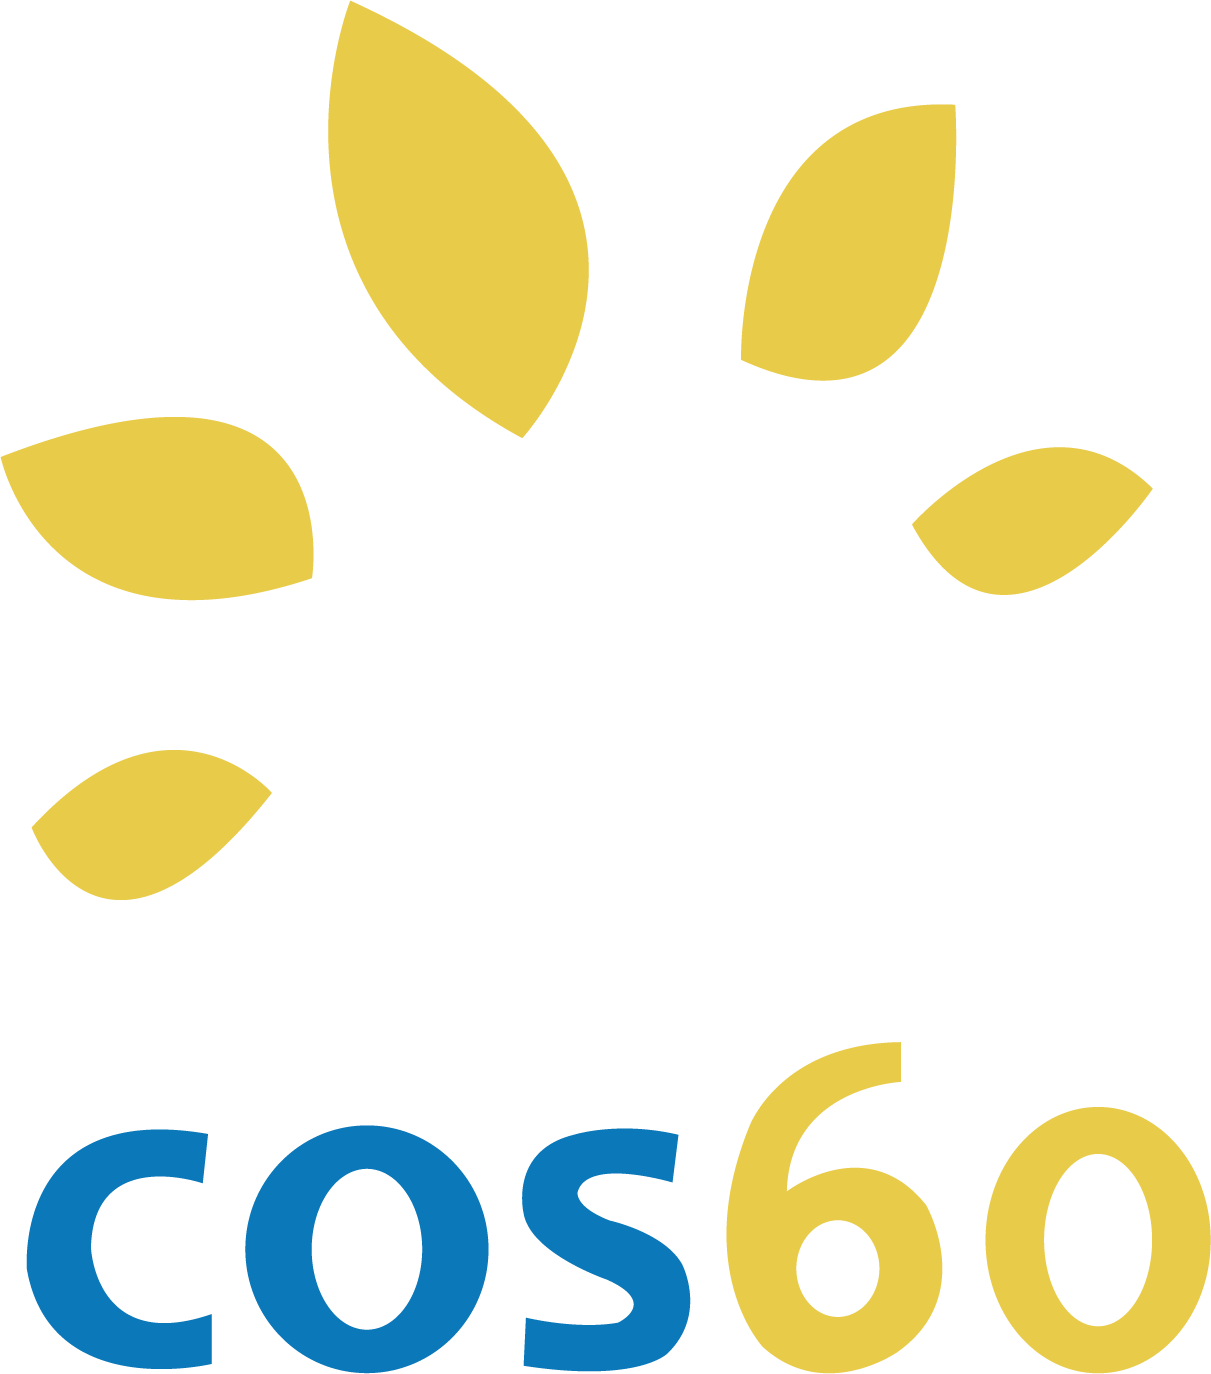 cos60